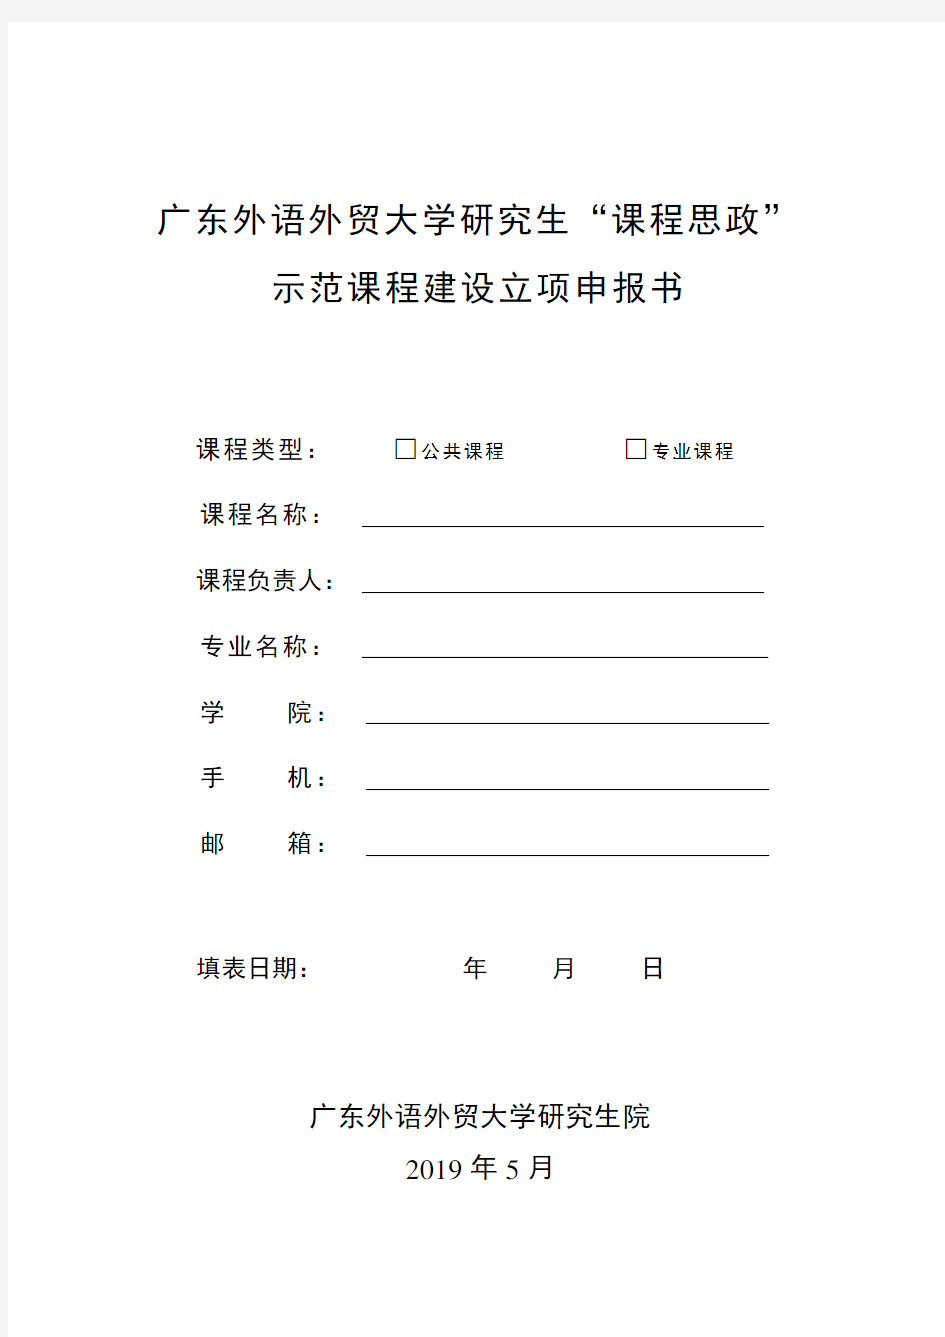 广东外语外贸大学研究生课程思政示范课程建设立项申报书